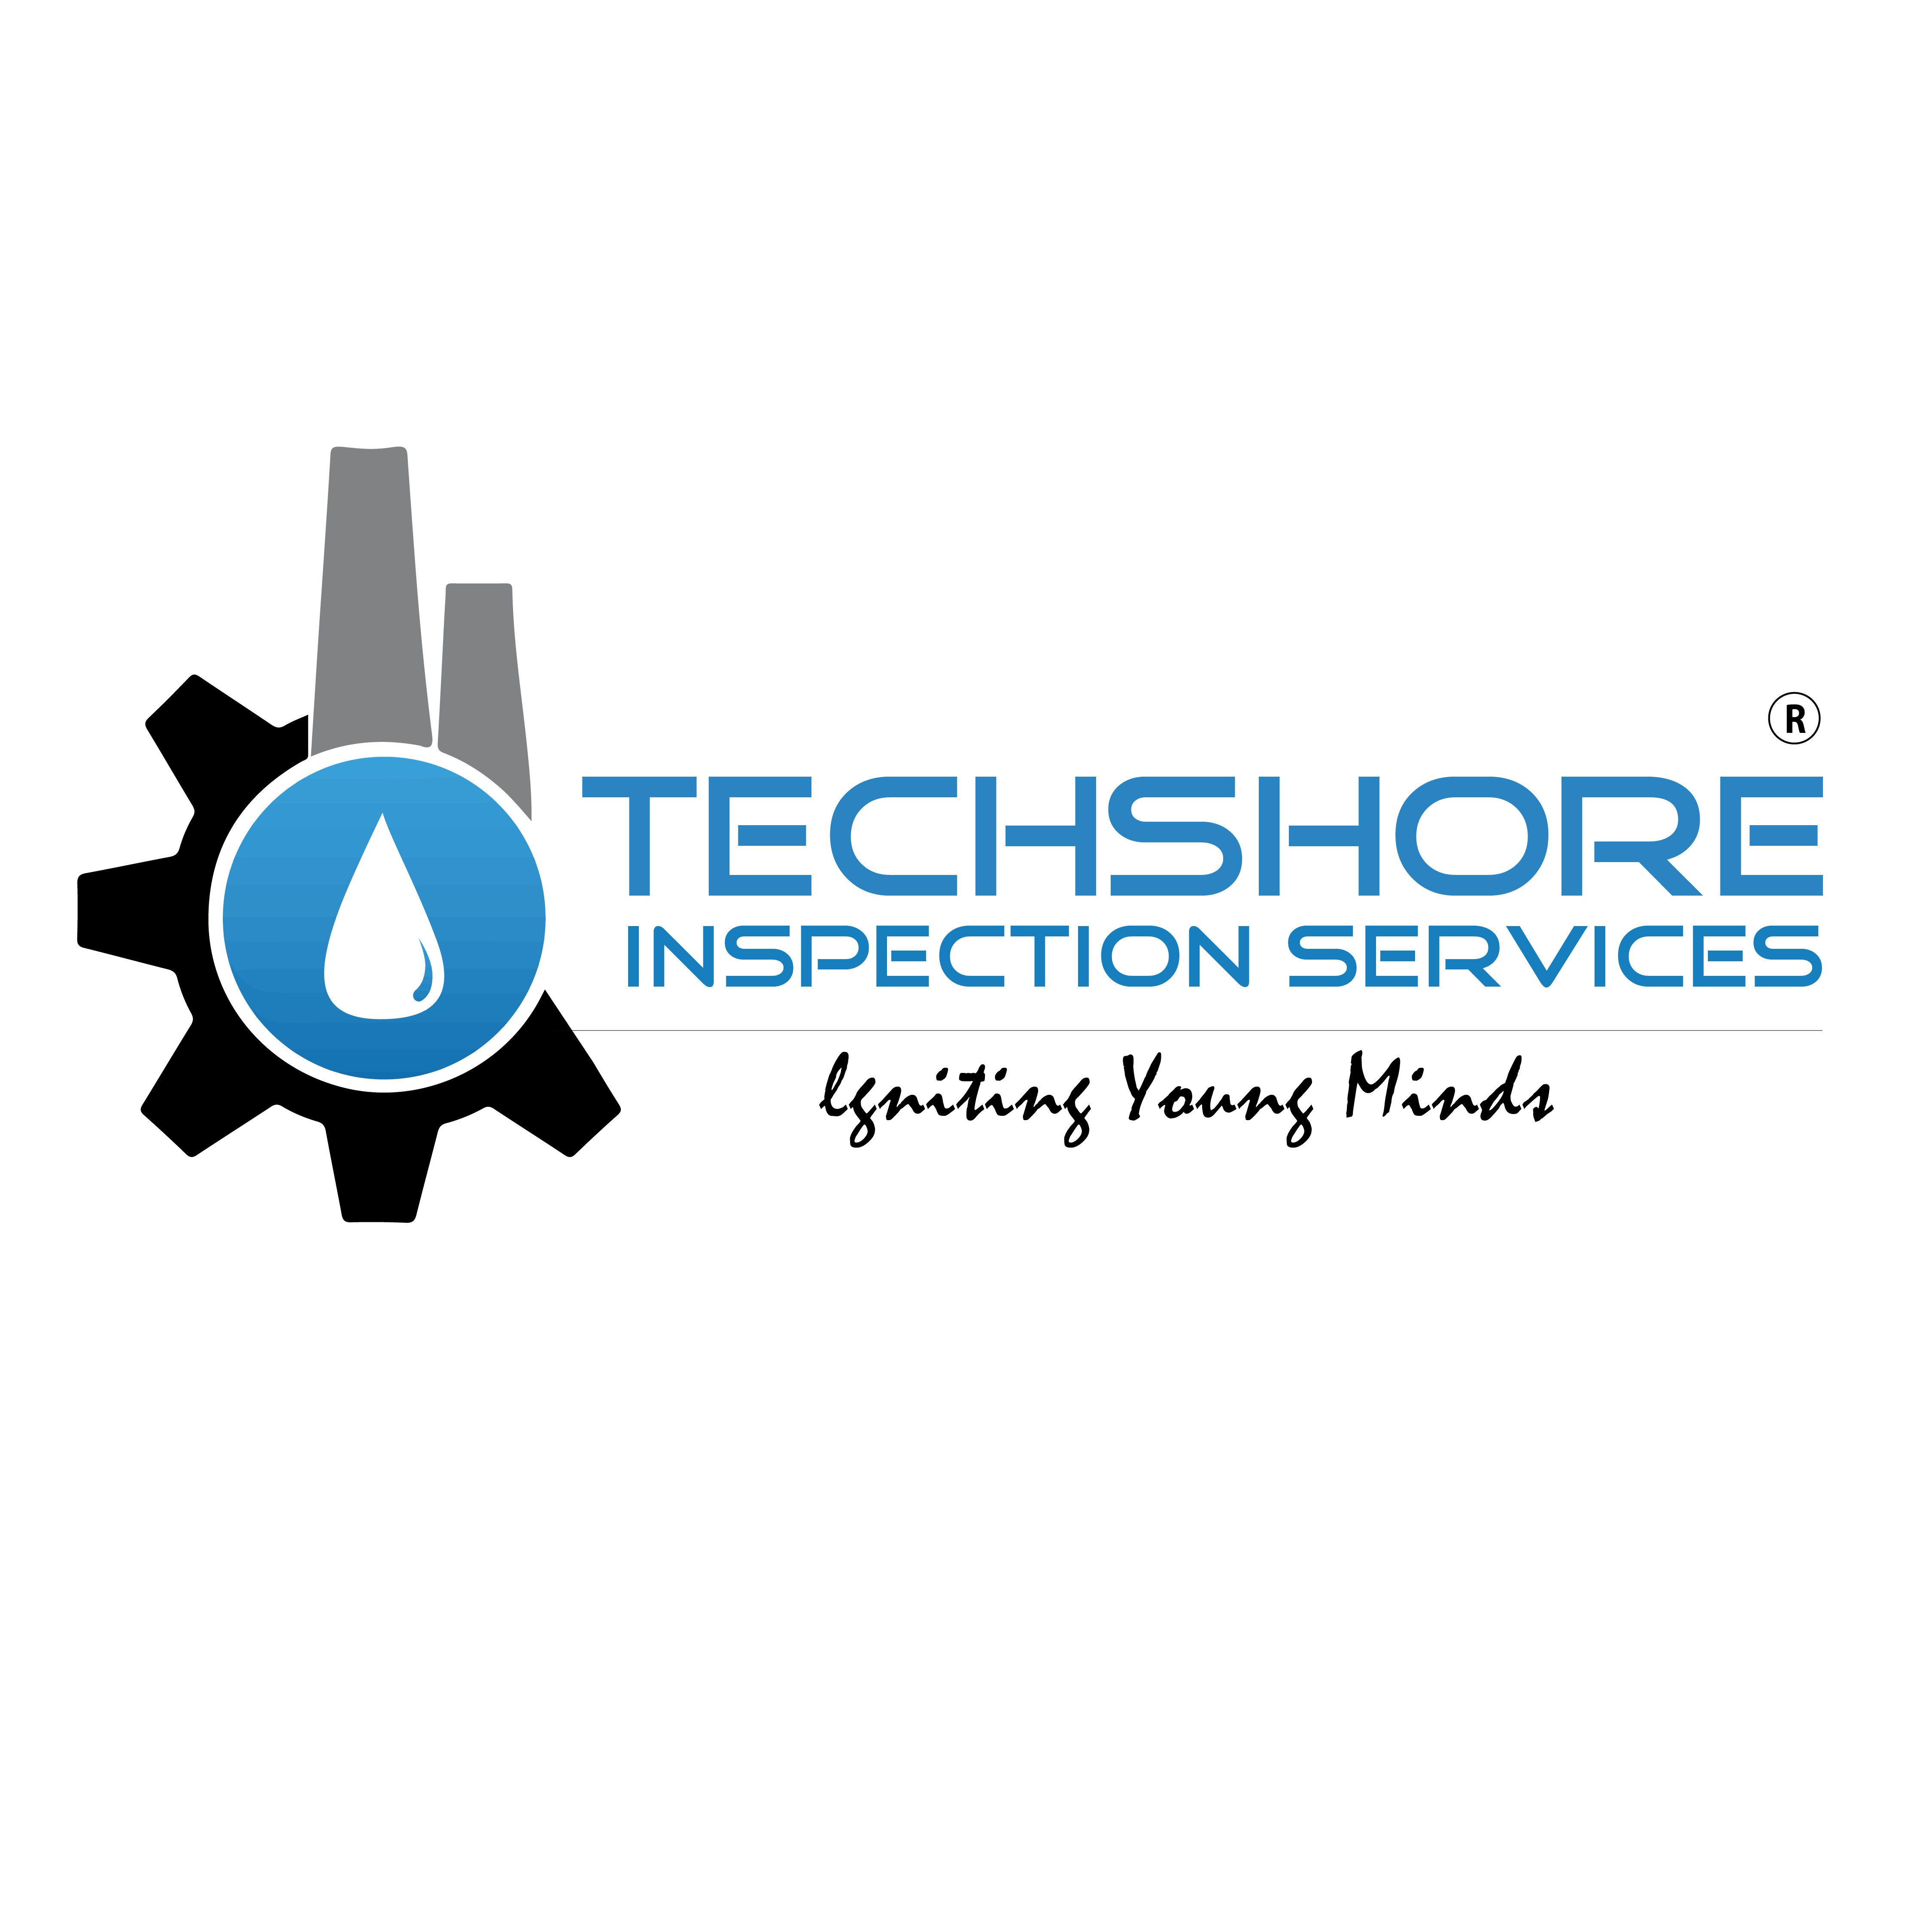 Techshore Inspection Services|Schools|Education